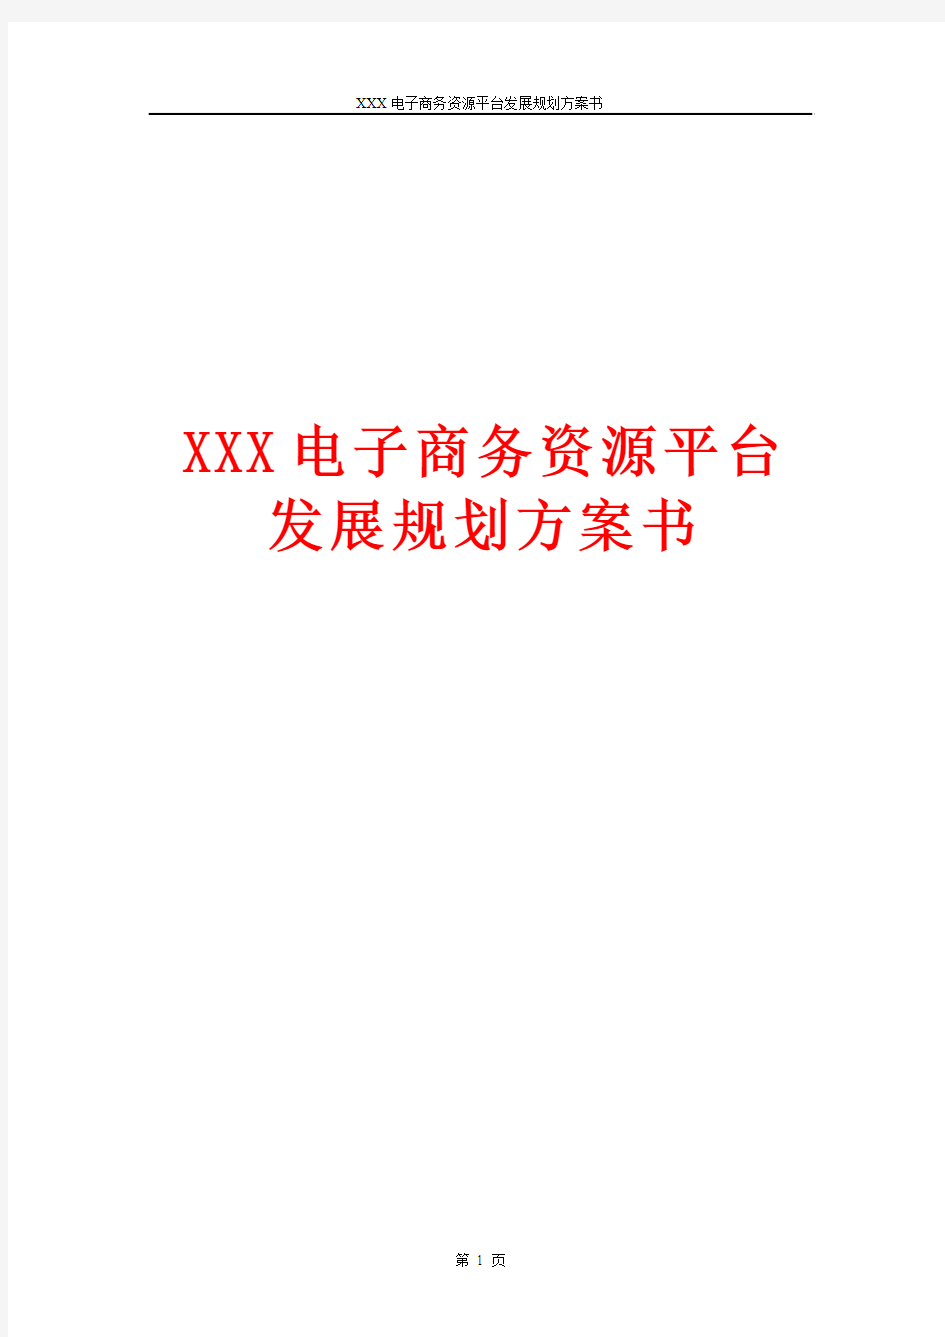 XXX电子商务资源平台发展规划方案书